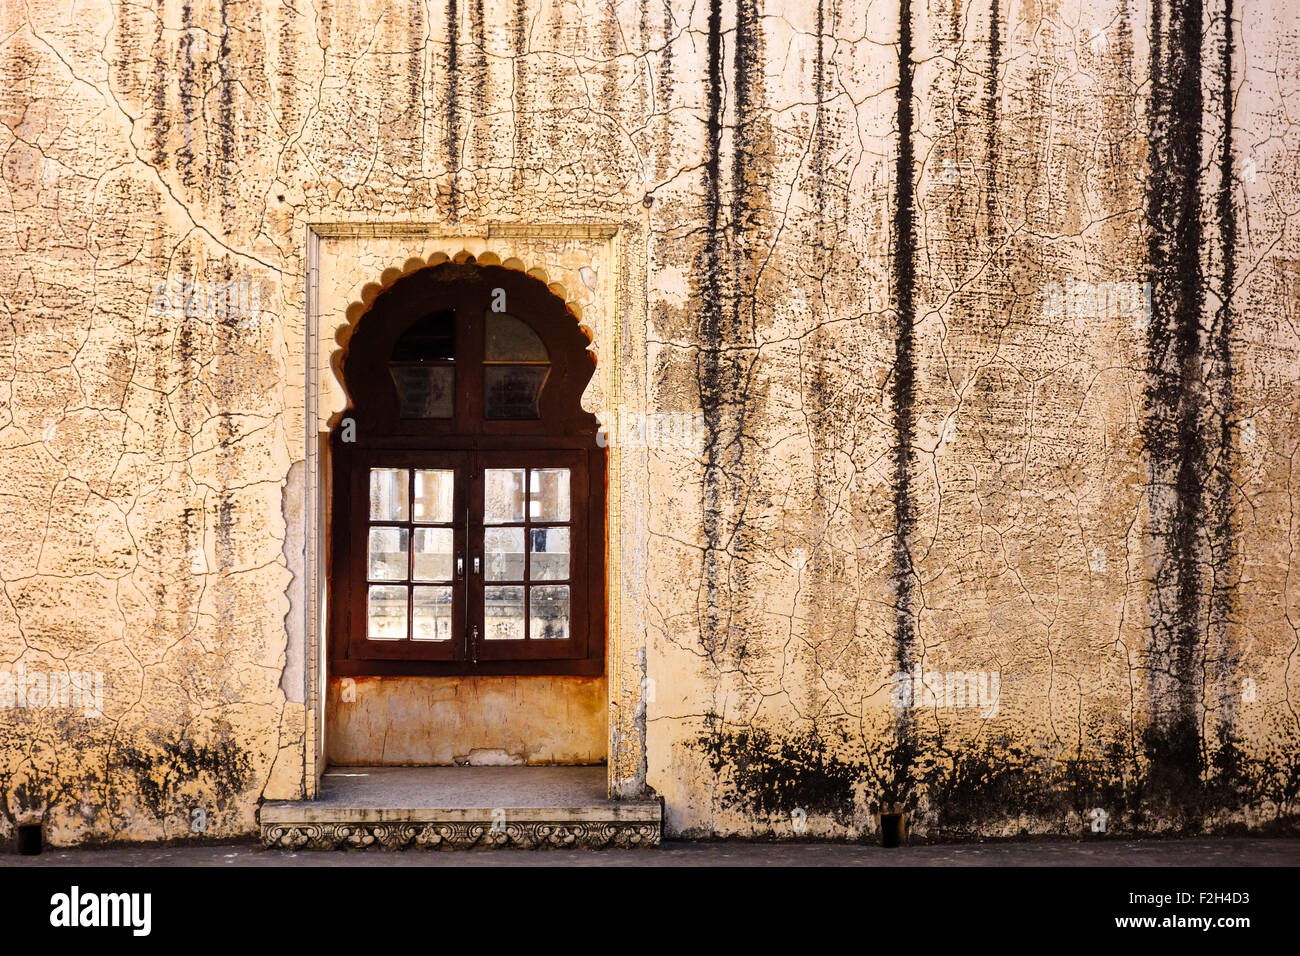 La texture du mur de béton avec des marques d'eau, taches de moisissure à l'intérieur, Badal Mahal Fort de Kumbhalgarh, Udaipur, Rajasthan, Inde Banque D'Images